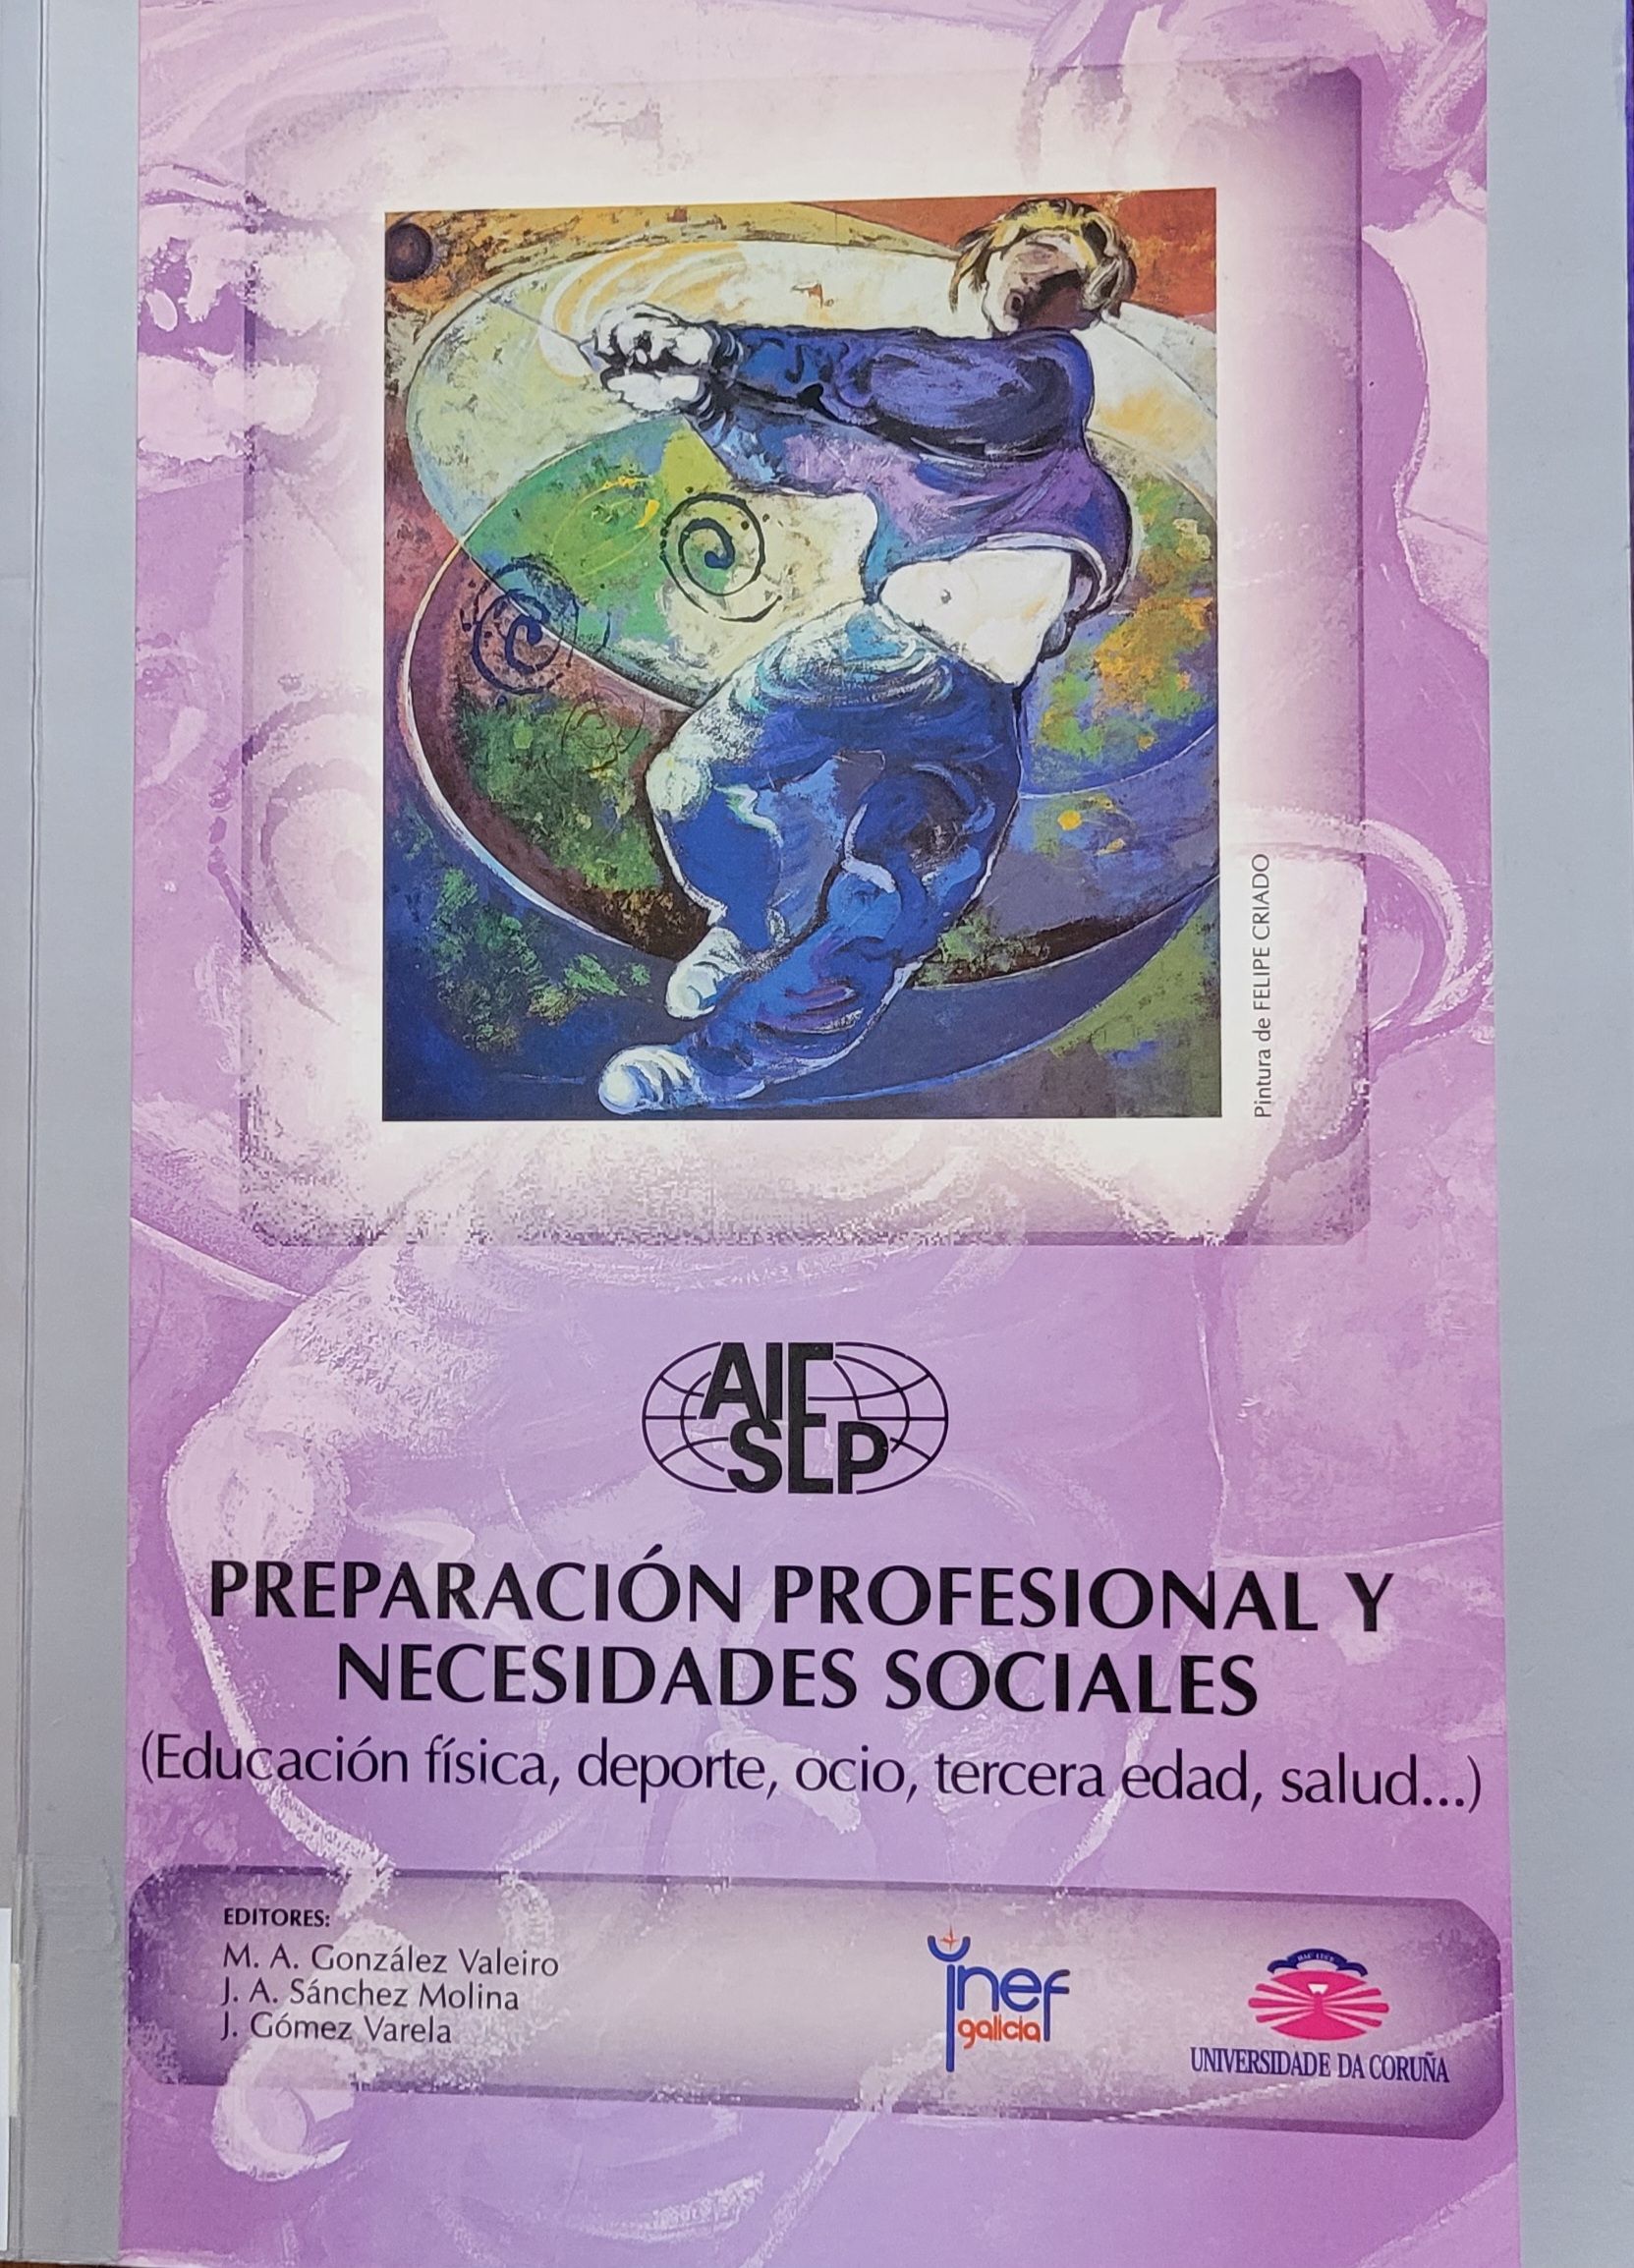 Imagen de portada del libro Preparación profesional y necesidades sociales